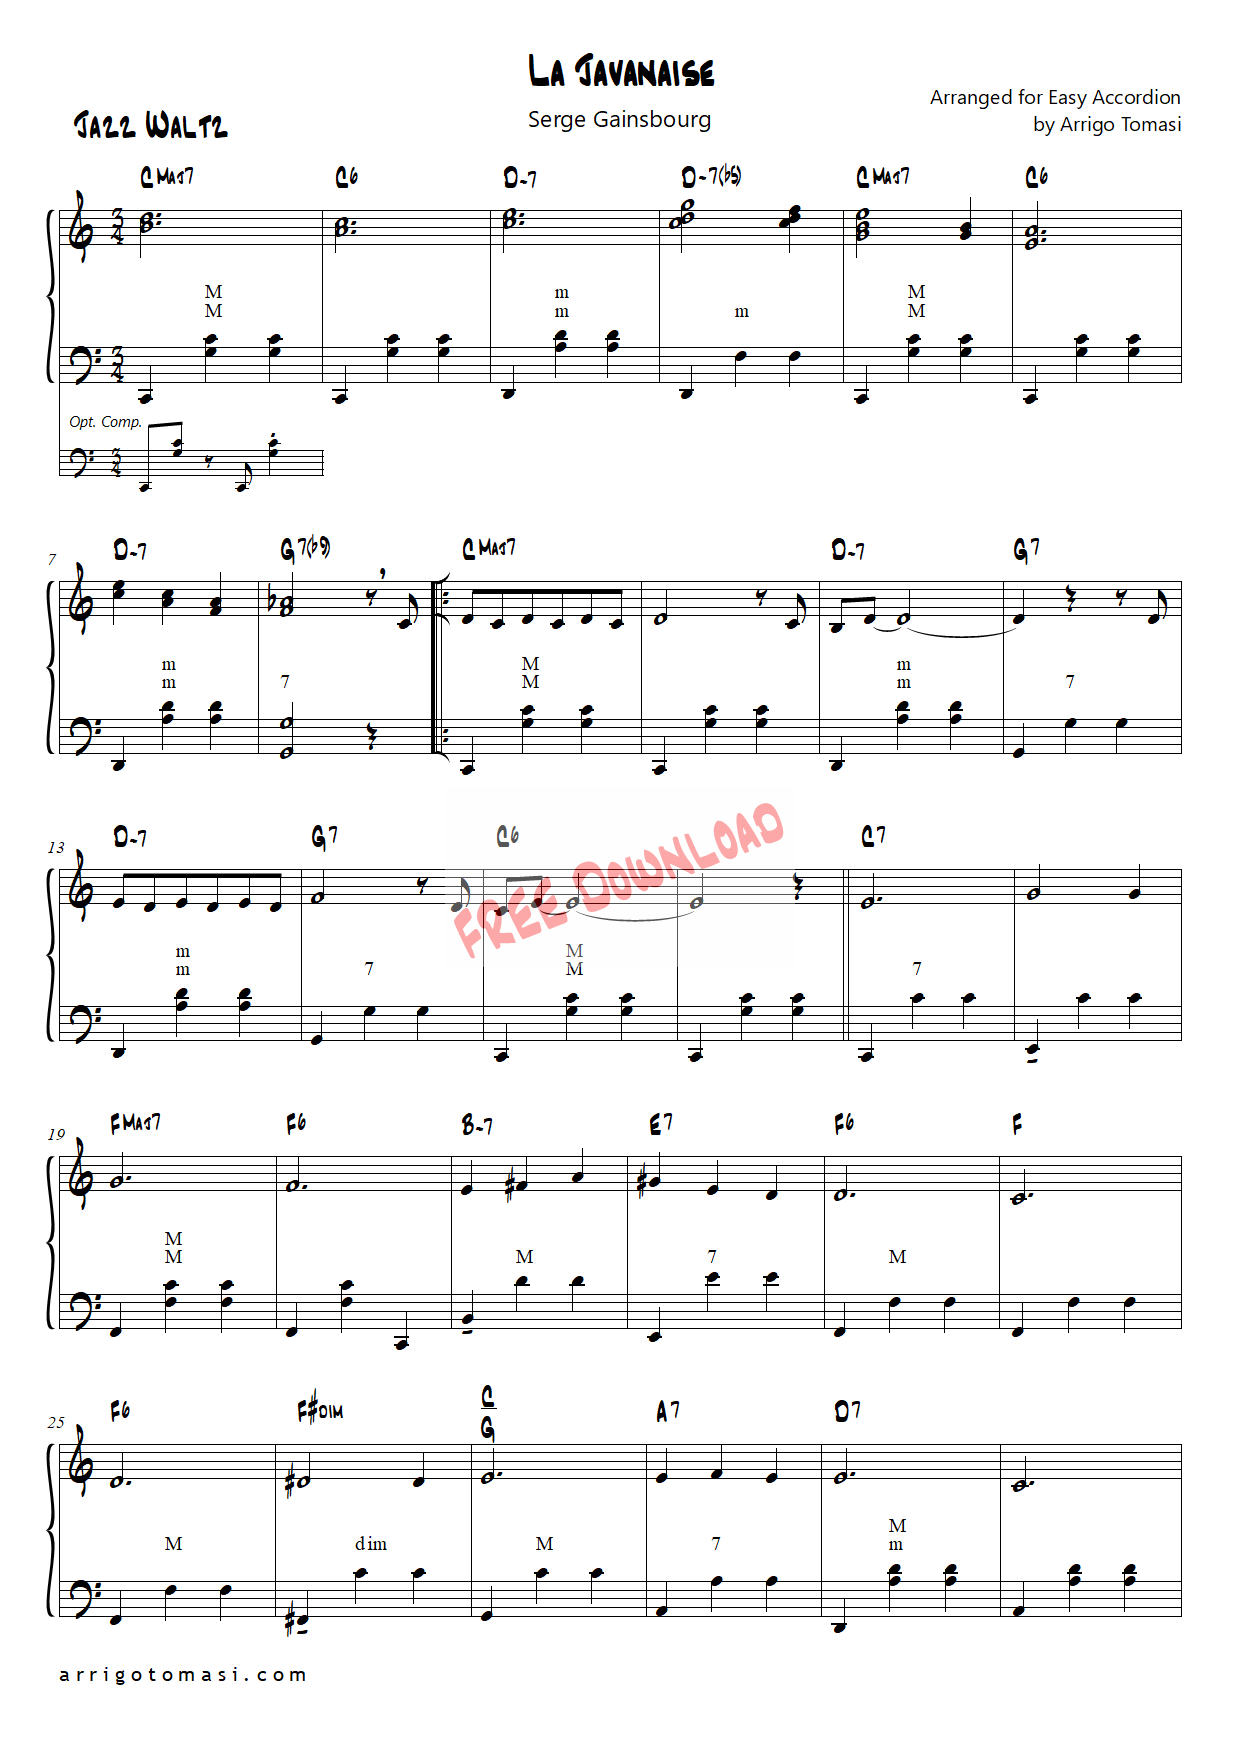 La Javanaise BB - Saxophone Alto 1 PDF